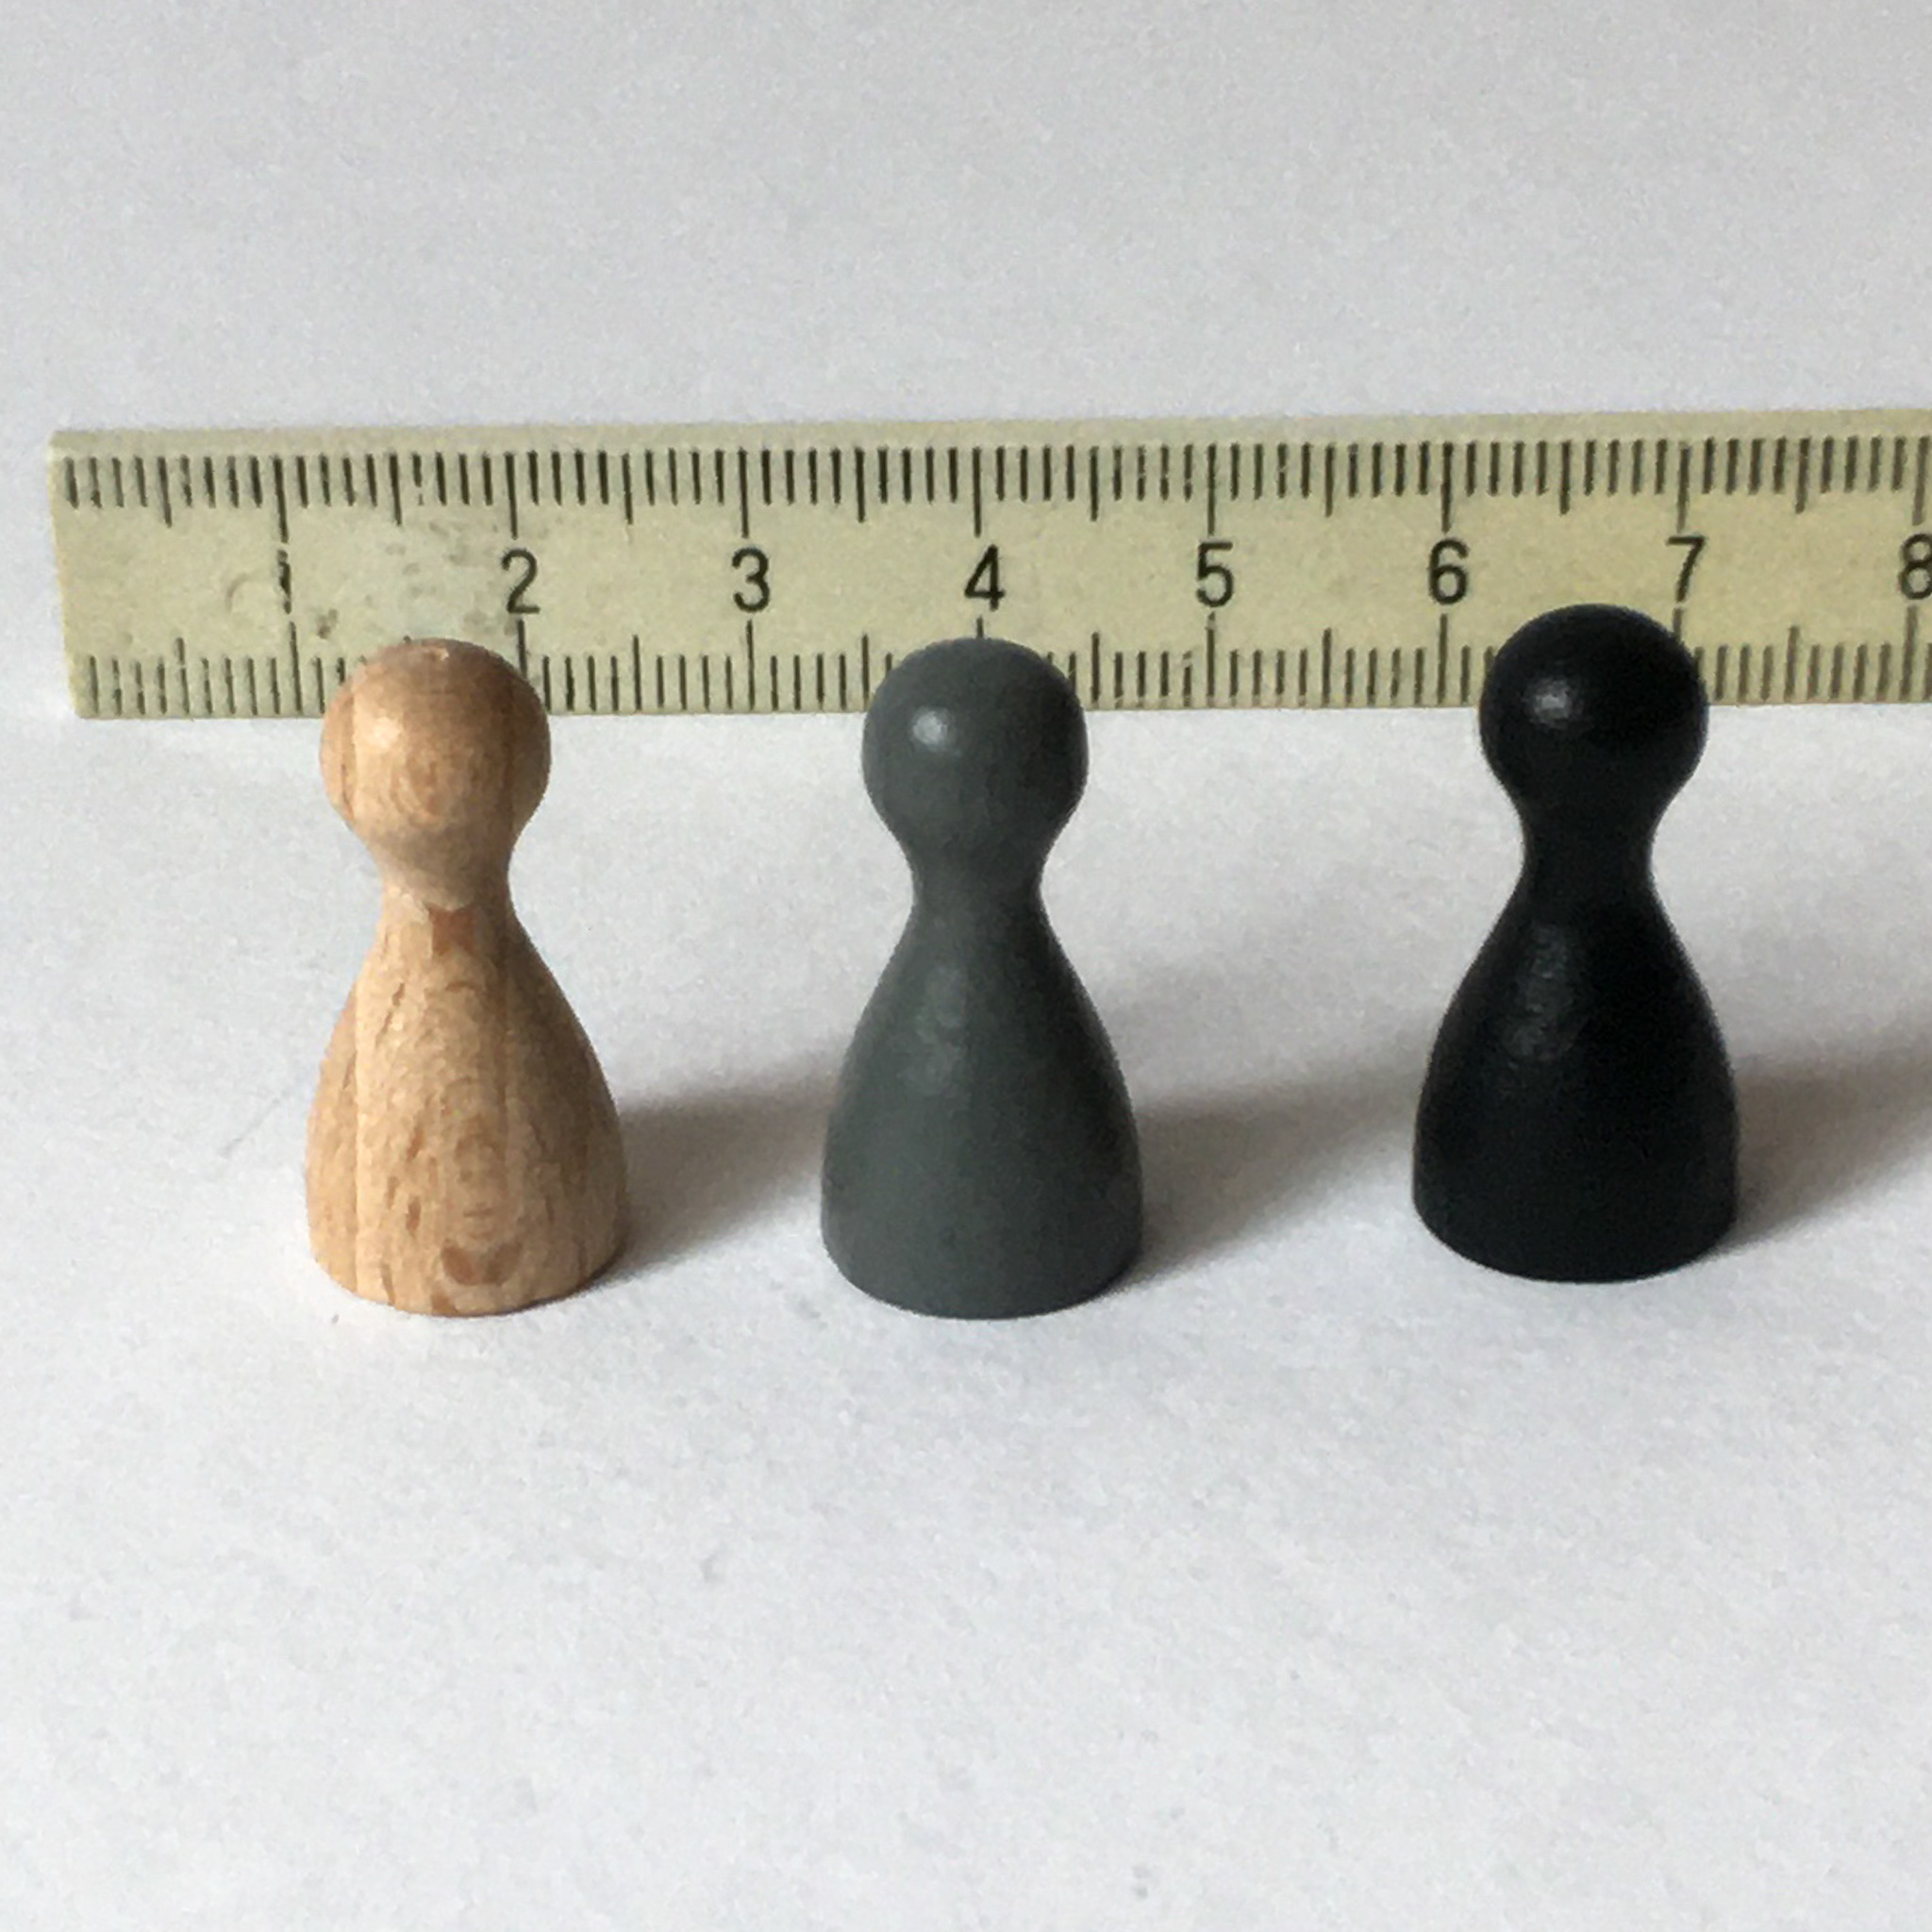    'Pöppel' Spielfiguren 2,5 cm in natur, grau und schwarz 